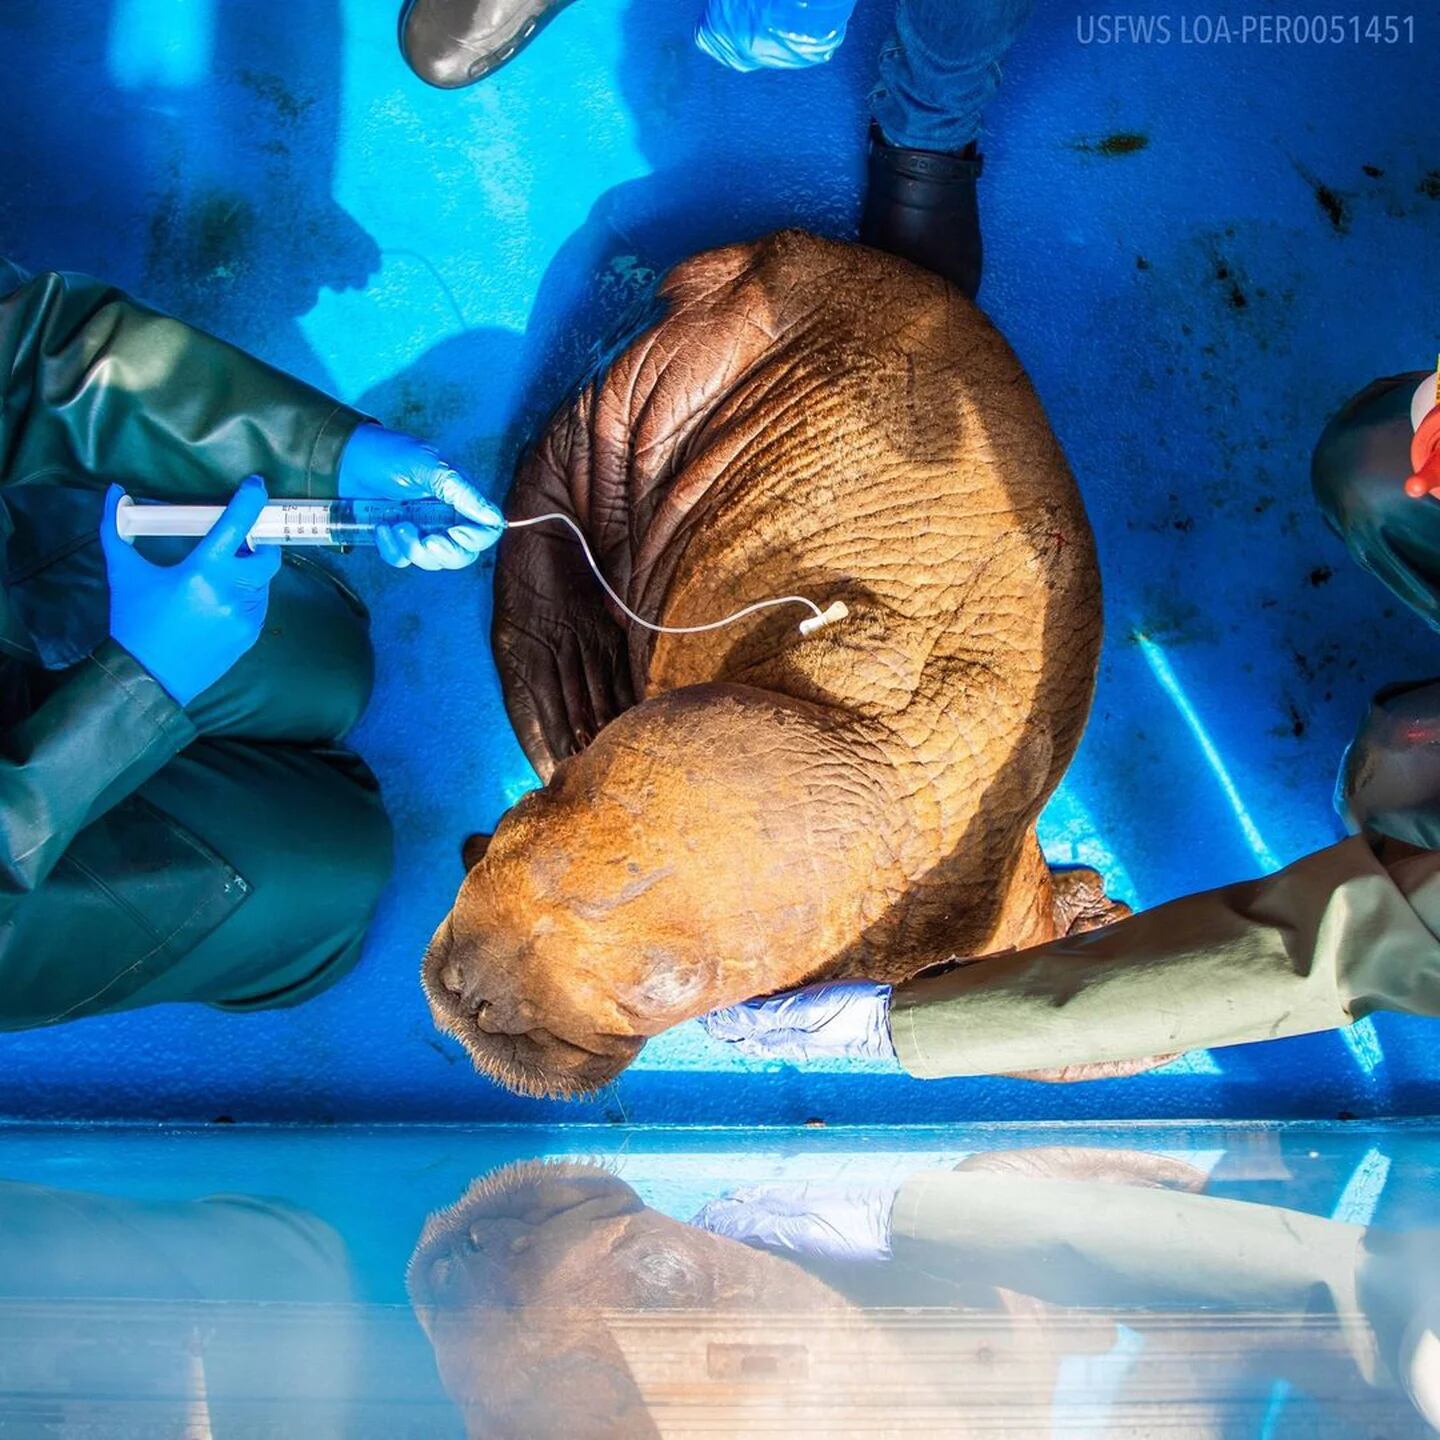 Una rara cría de morsa fue rescatada en Alaska, donde fue hallada  deambulando sola